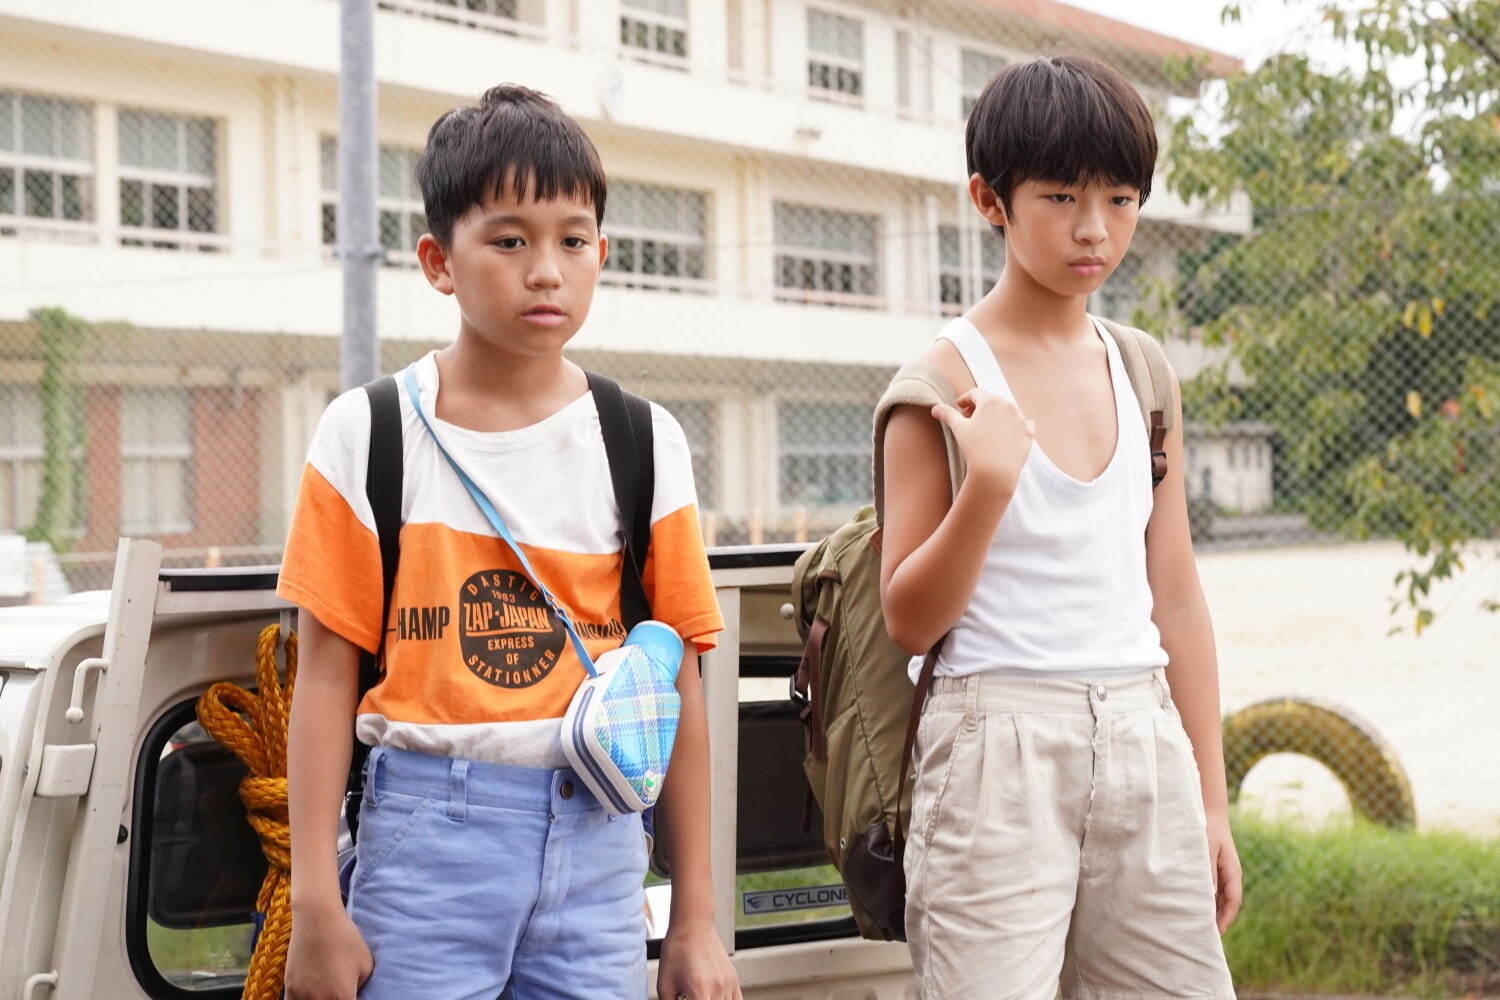 映画『サバカン SABAKAN』草彅剛ら出演、少年たちと家族の“愛の物語”80 